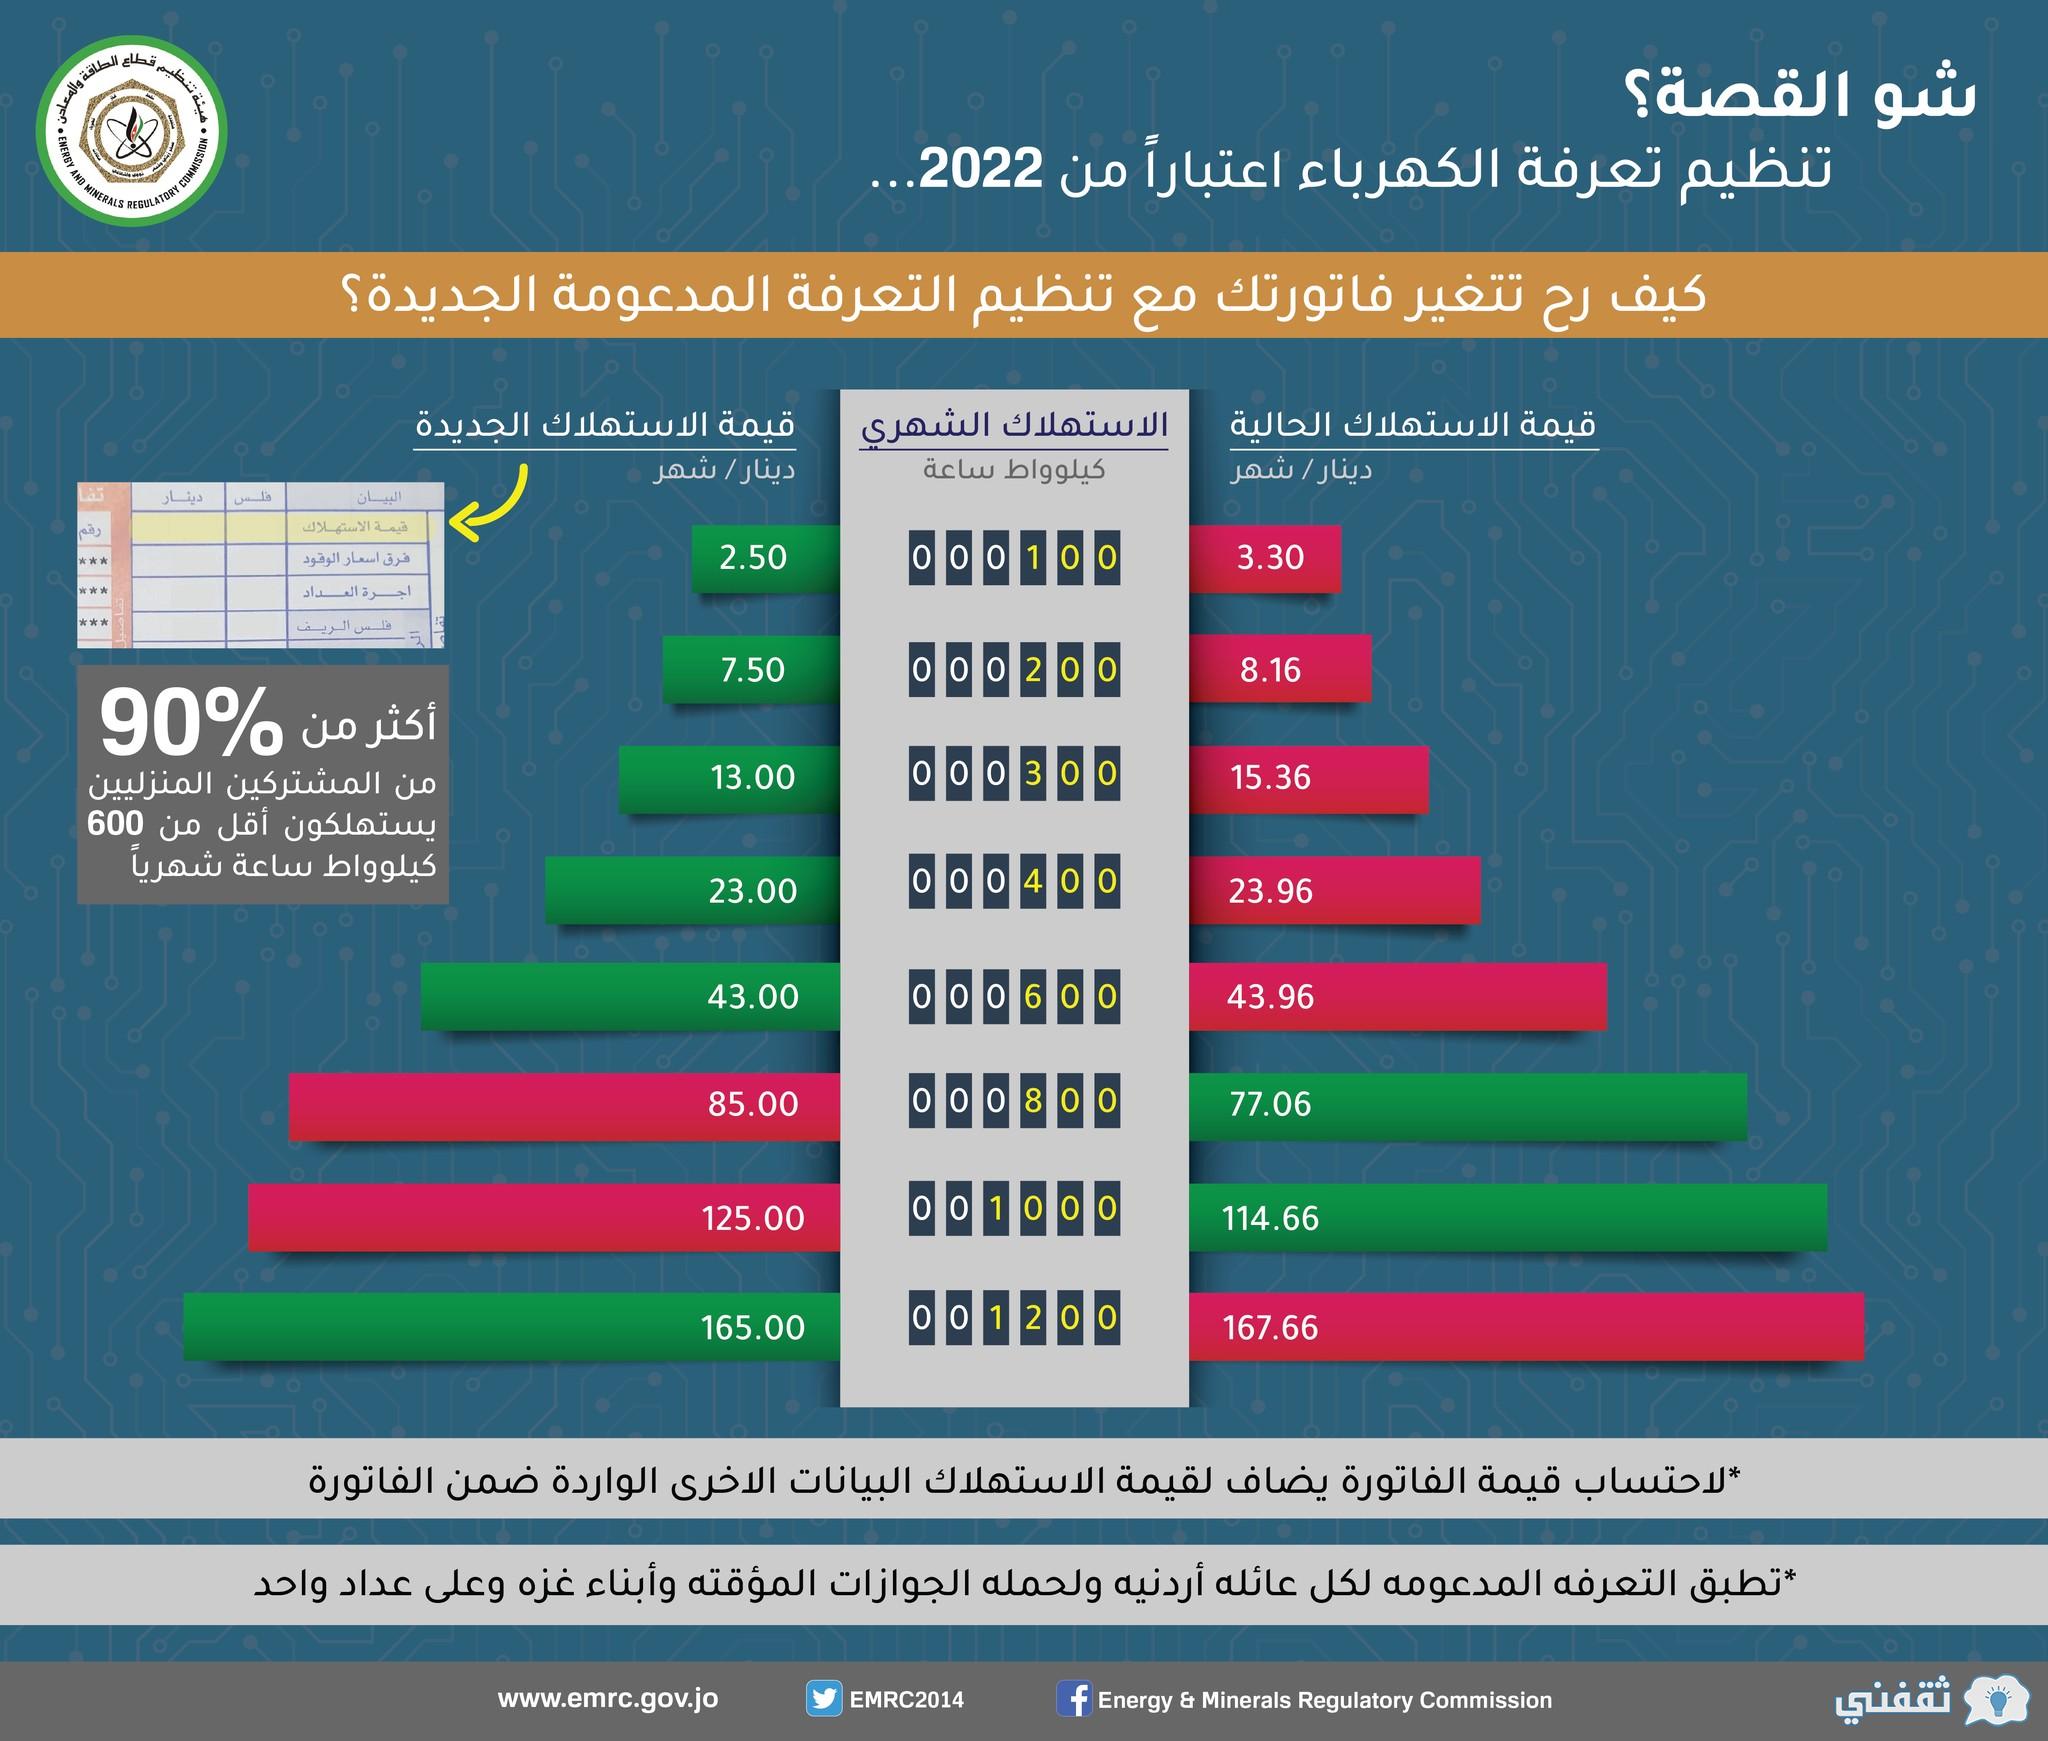 تسجيل منصة دعم الكهرباء بالاردن emrc.gov.jo شرائح التسعير الكهربي 2022